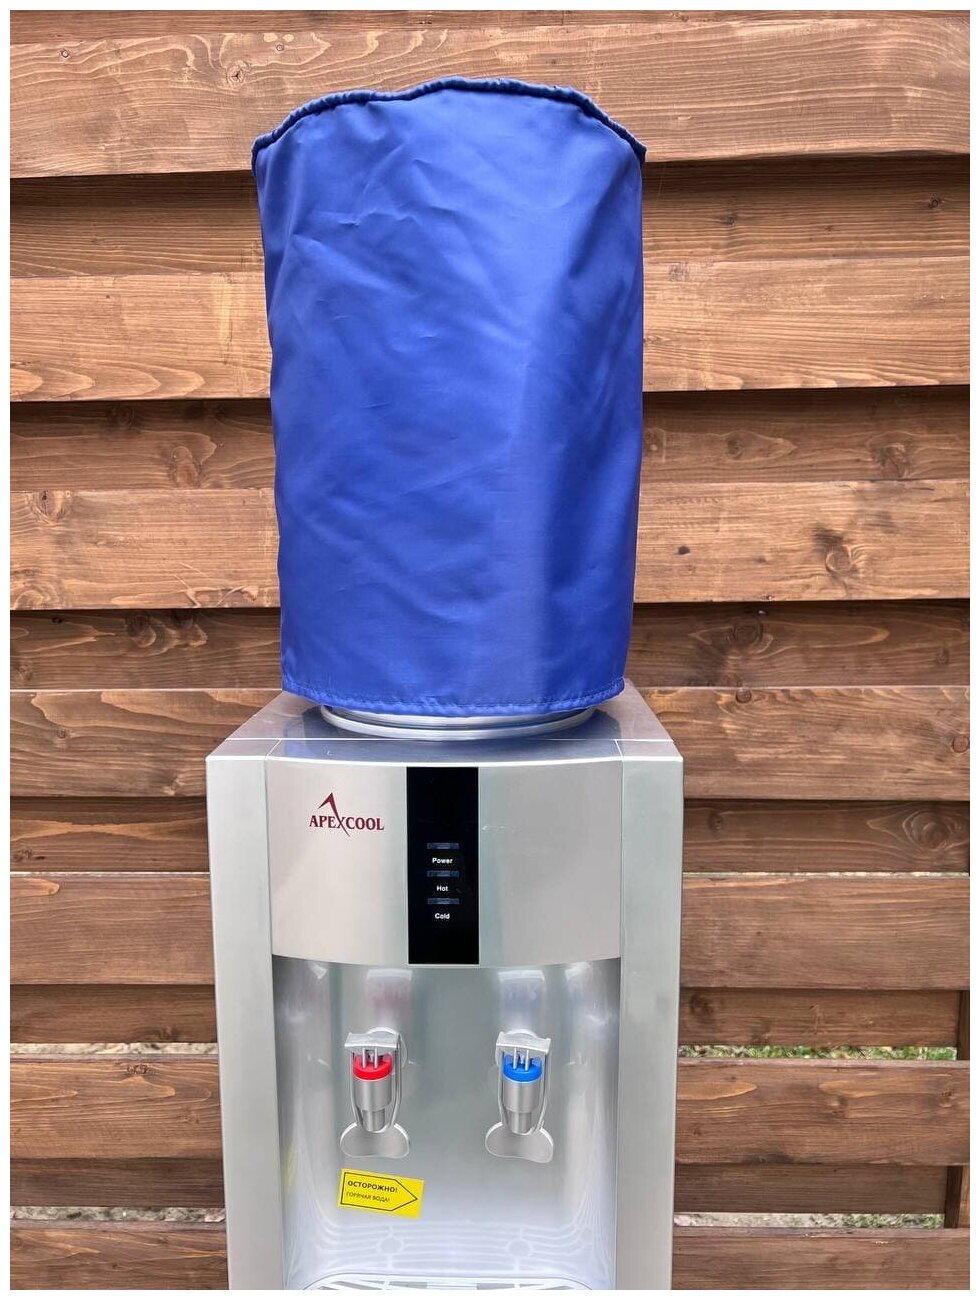 Кулер, Petrocooler, Чехол на бутыль 19 литров со смотровым окном для проверки уровня воды, Синий.